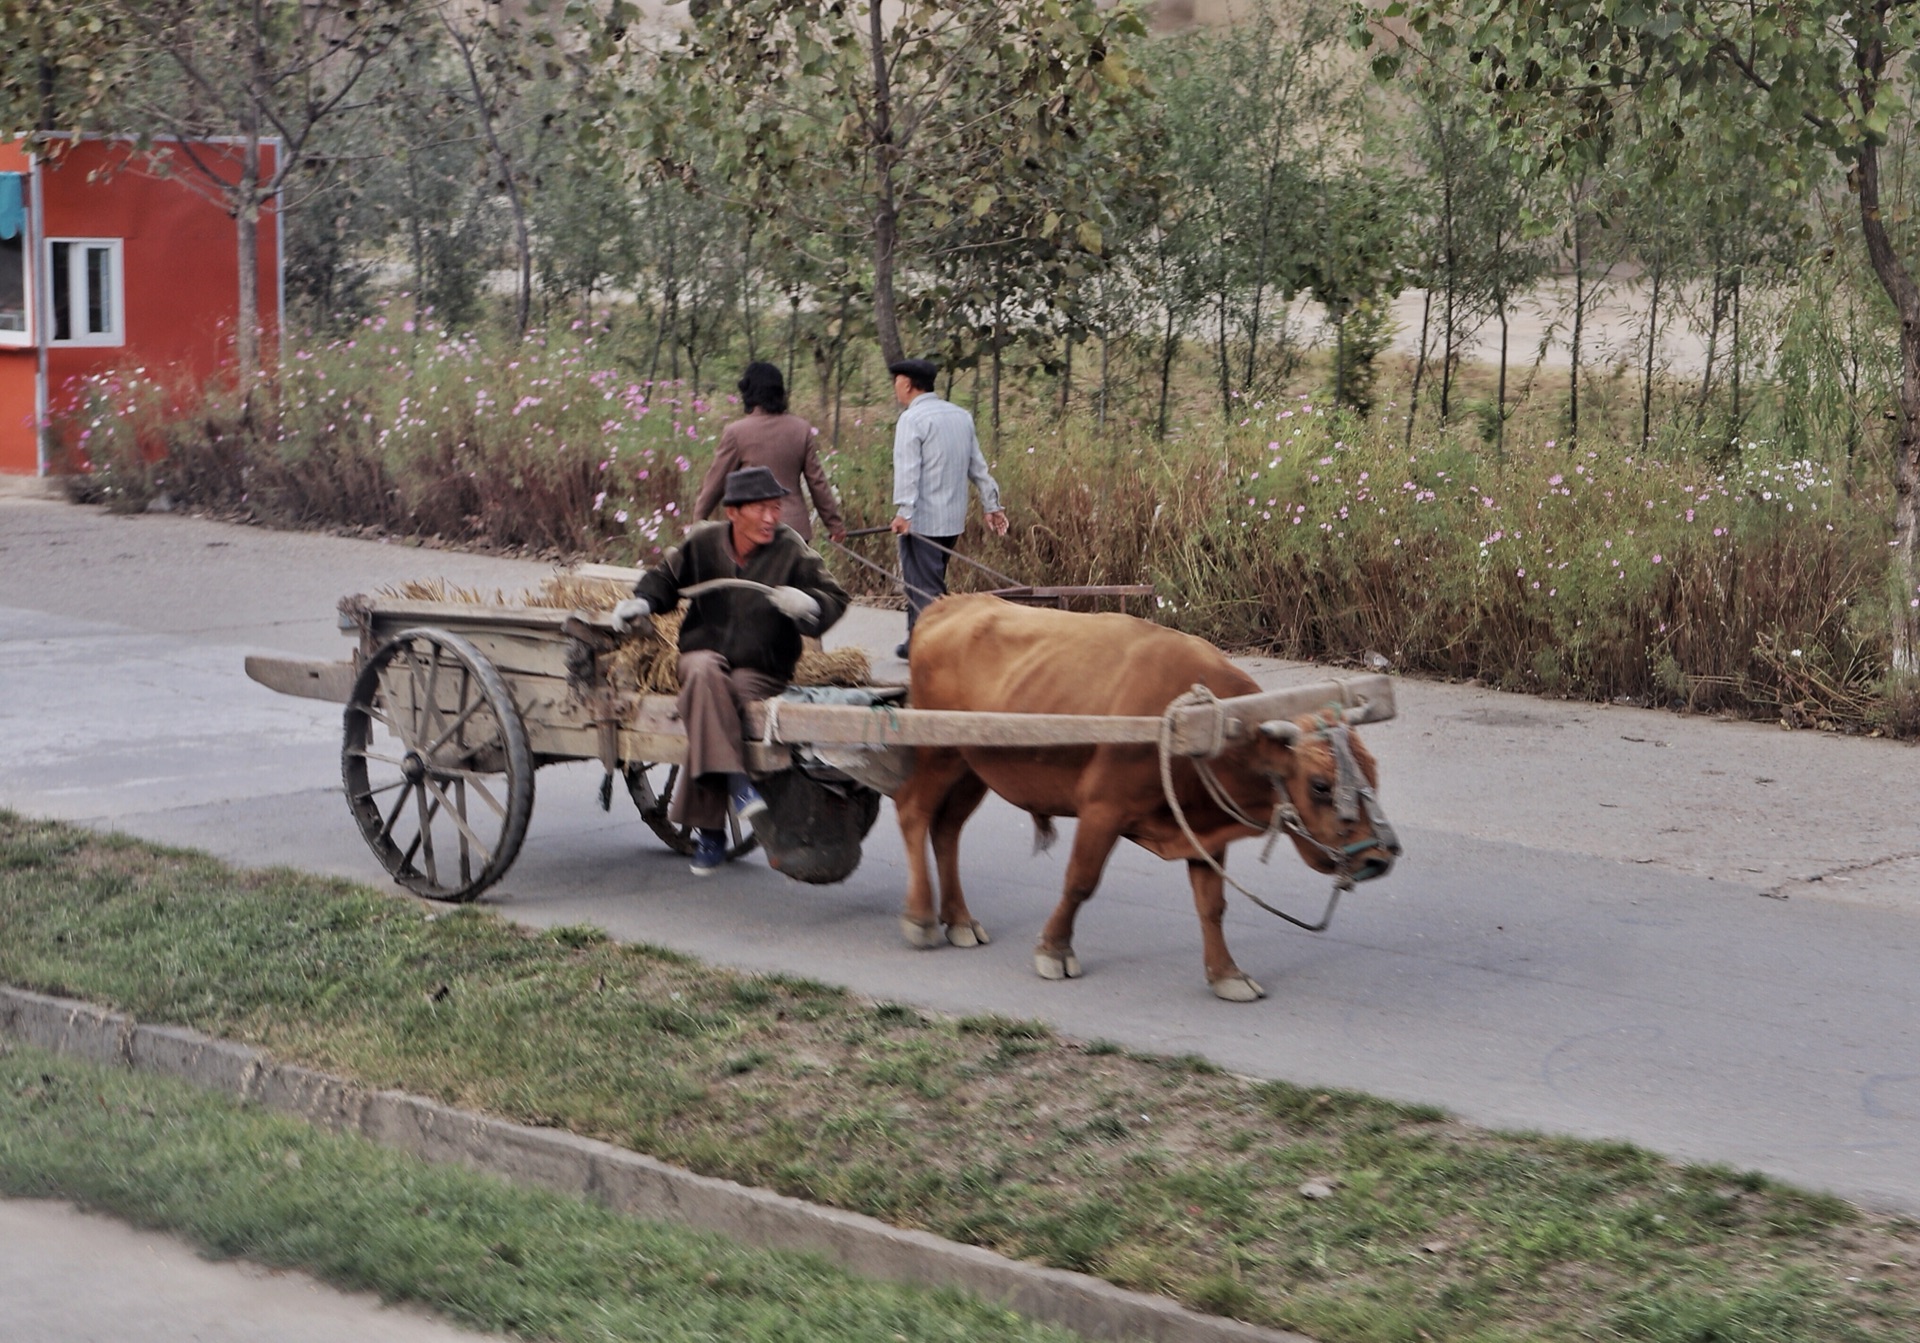 图为朝鲜农村地区,一名朝鲜老人赶着牛车行驶在公路上.